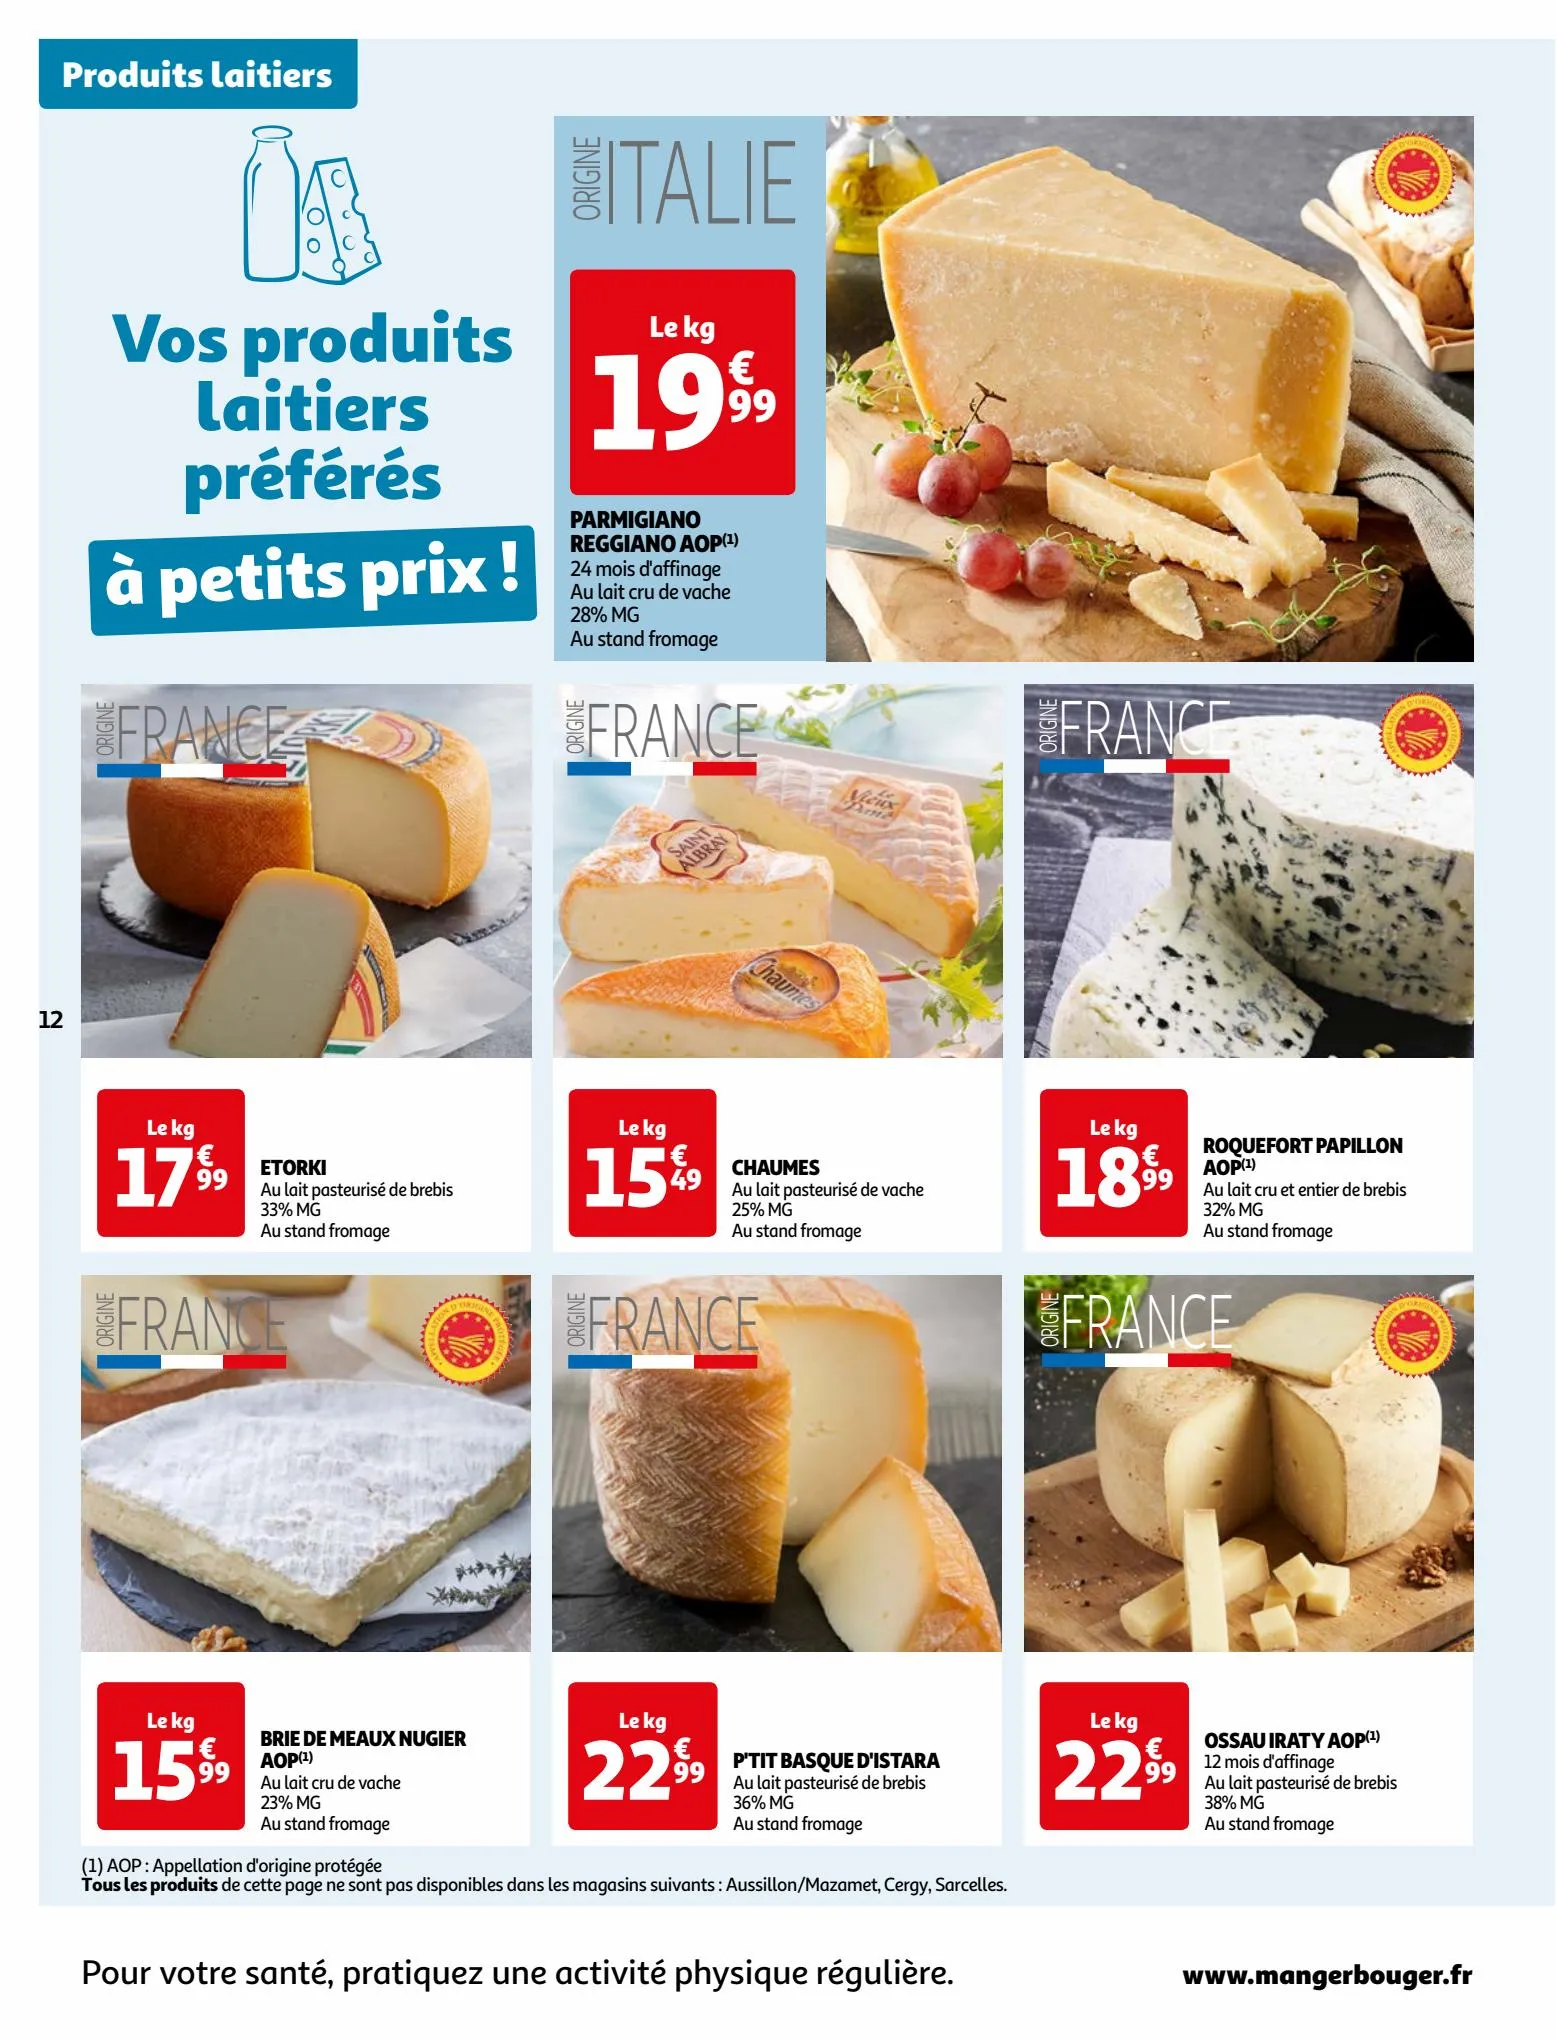 Catalogue Vos produits laitiers à petits prix !, page 00012